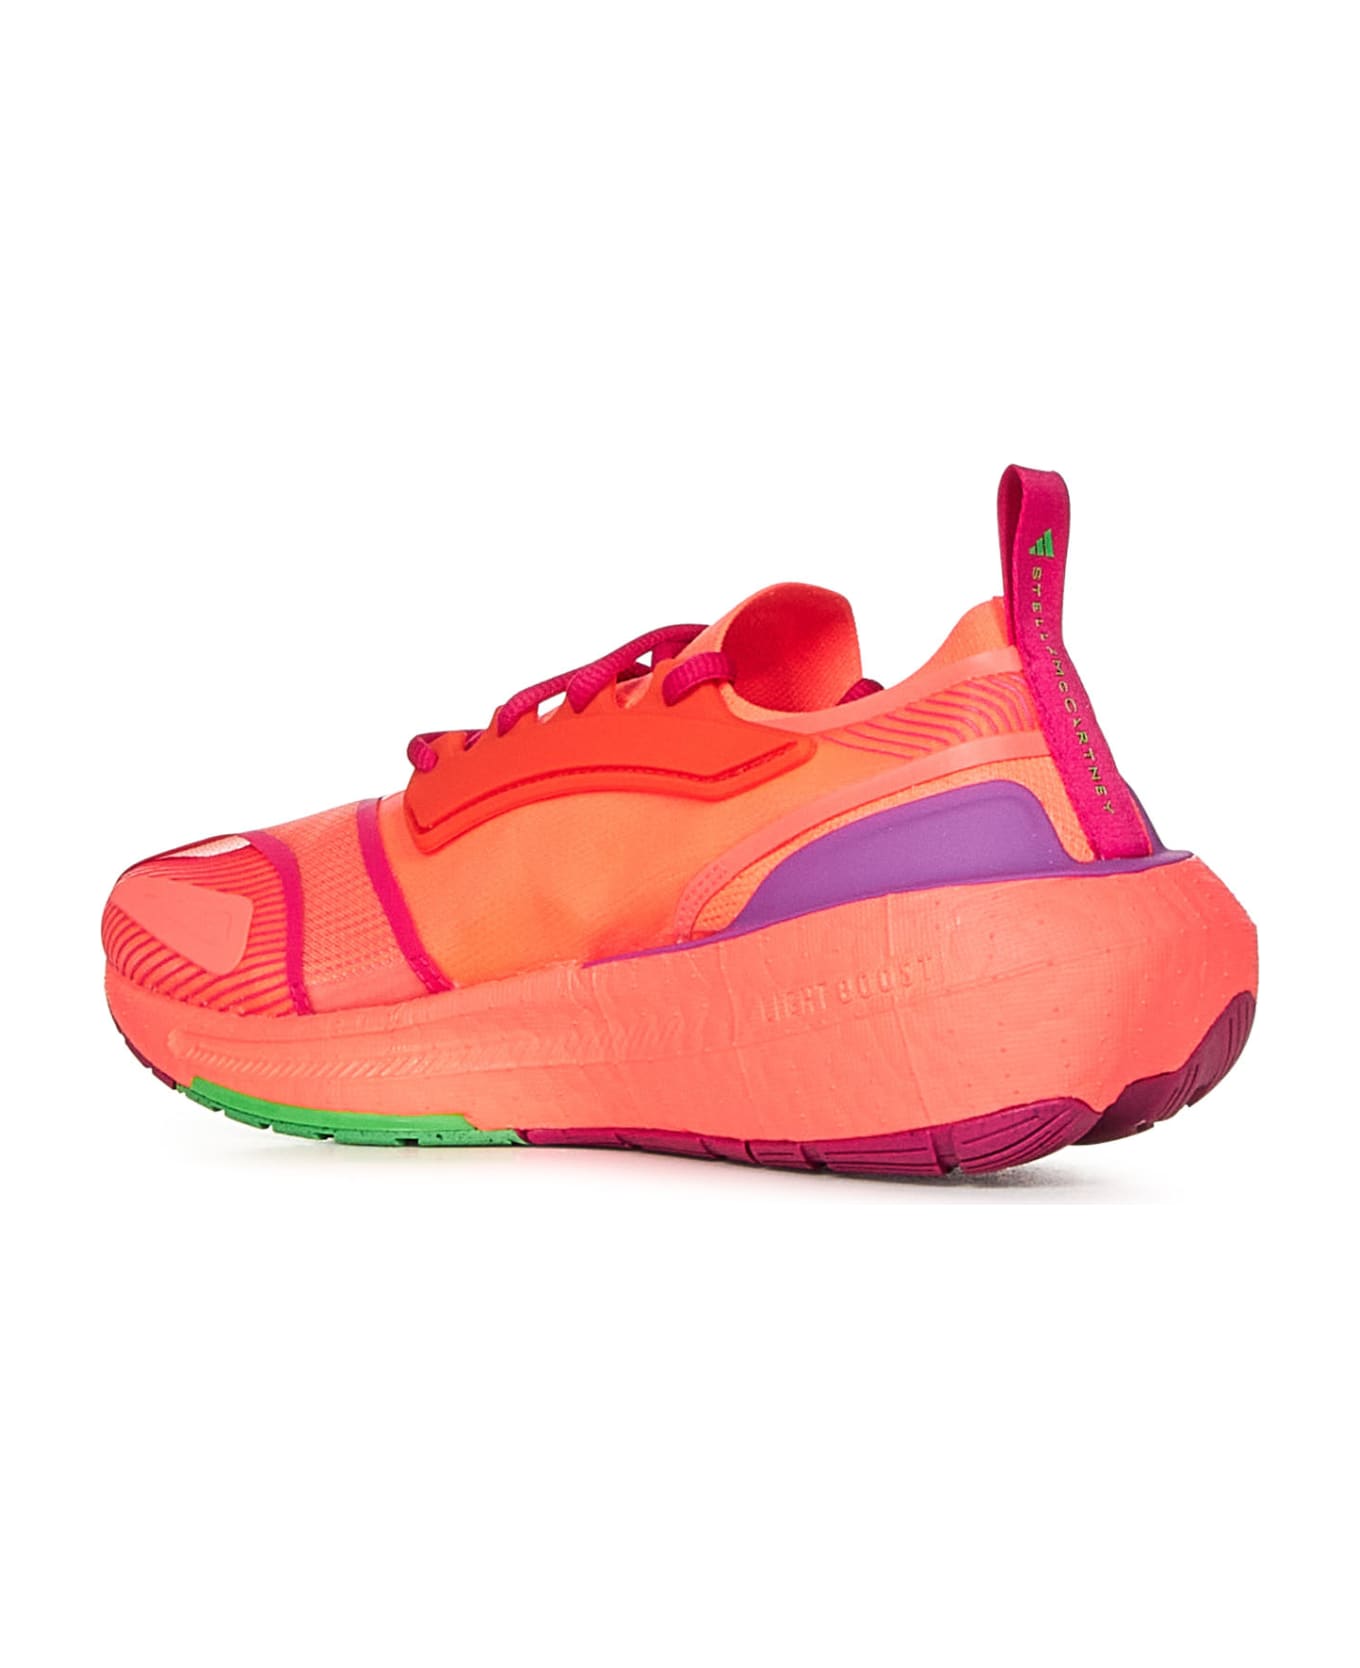 Adidas by Stella McCartney Ultraboost Light Sneakers - Orange